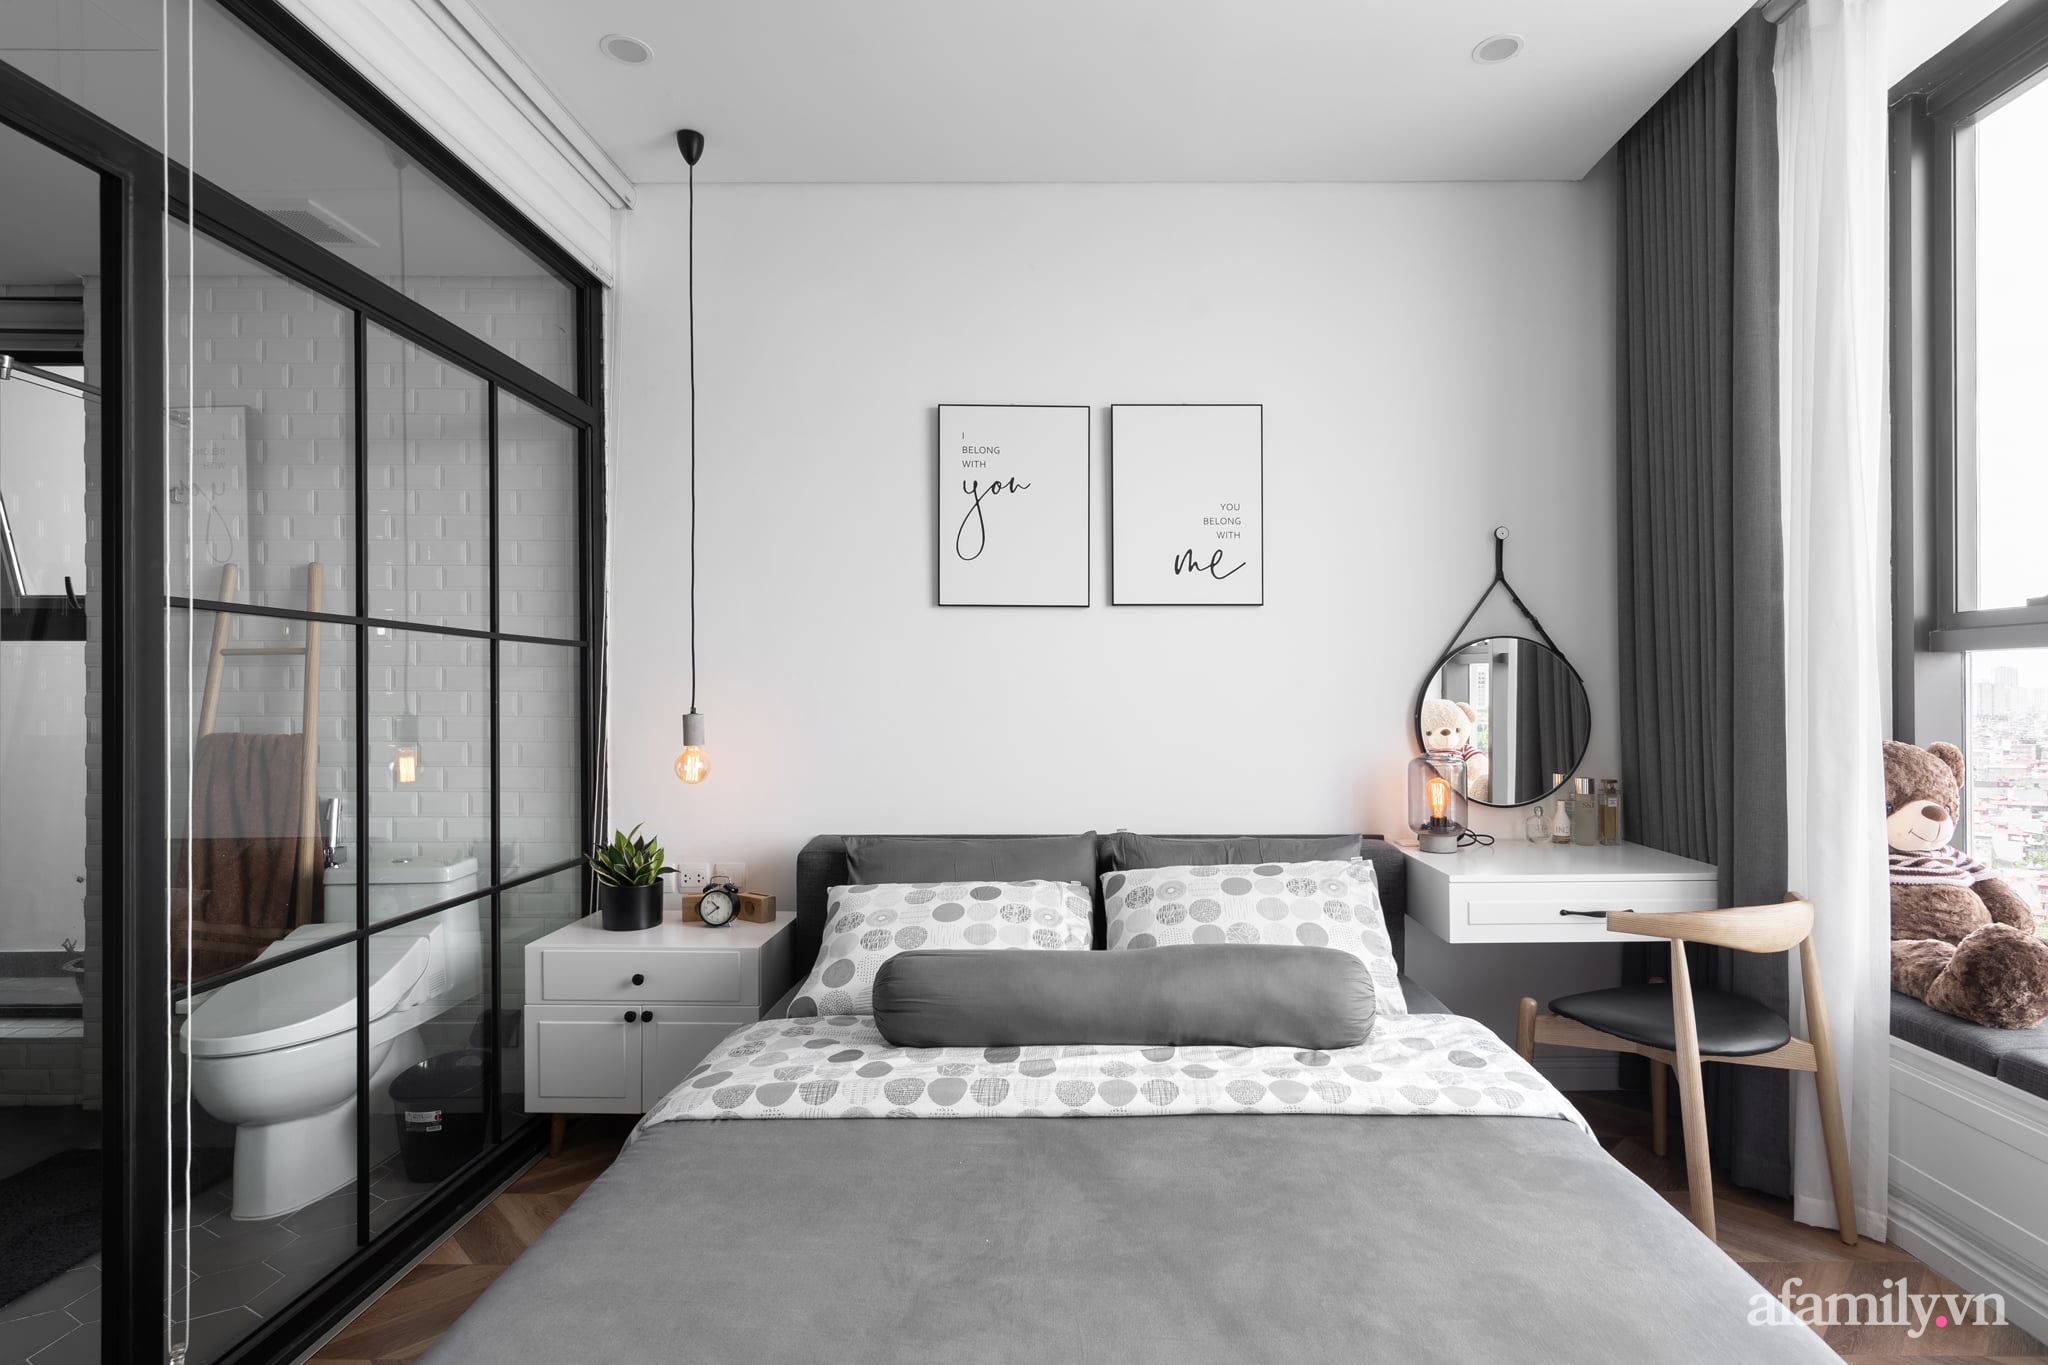 Căn hộ 90m² đẹp hiện đại và cuốn hút với tông màu trắng xám có chi phí nội thất 300 triệu đồng ở chung cư Ancora Residence Lương Yên, Hà Nội - Ảnh 17.